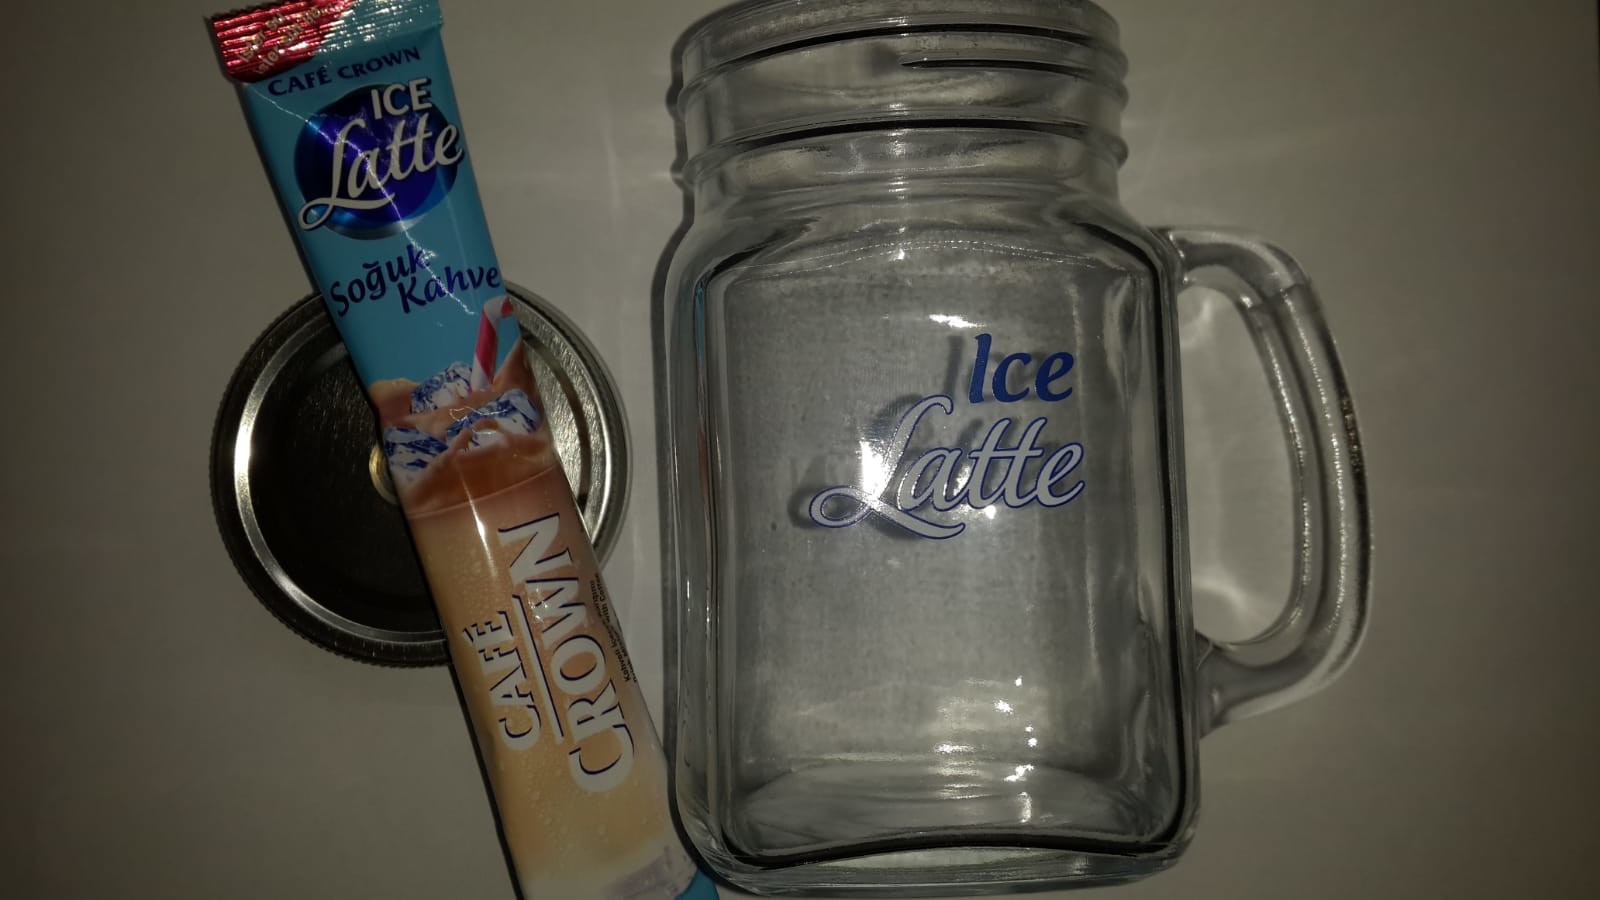 Cafe crown 16'lı Ice latte, bardak hediyeli 5.90(Hepsiburada)